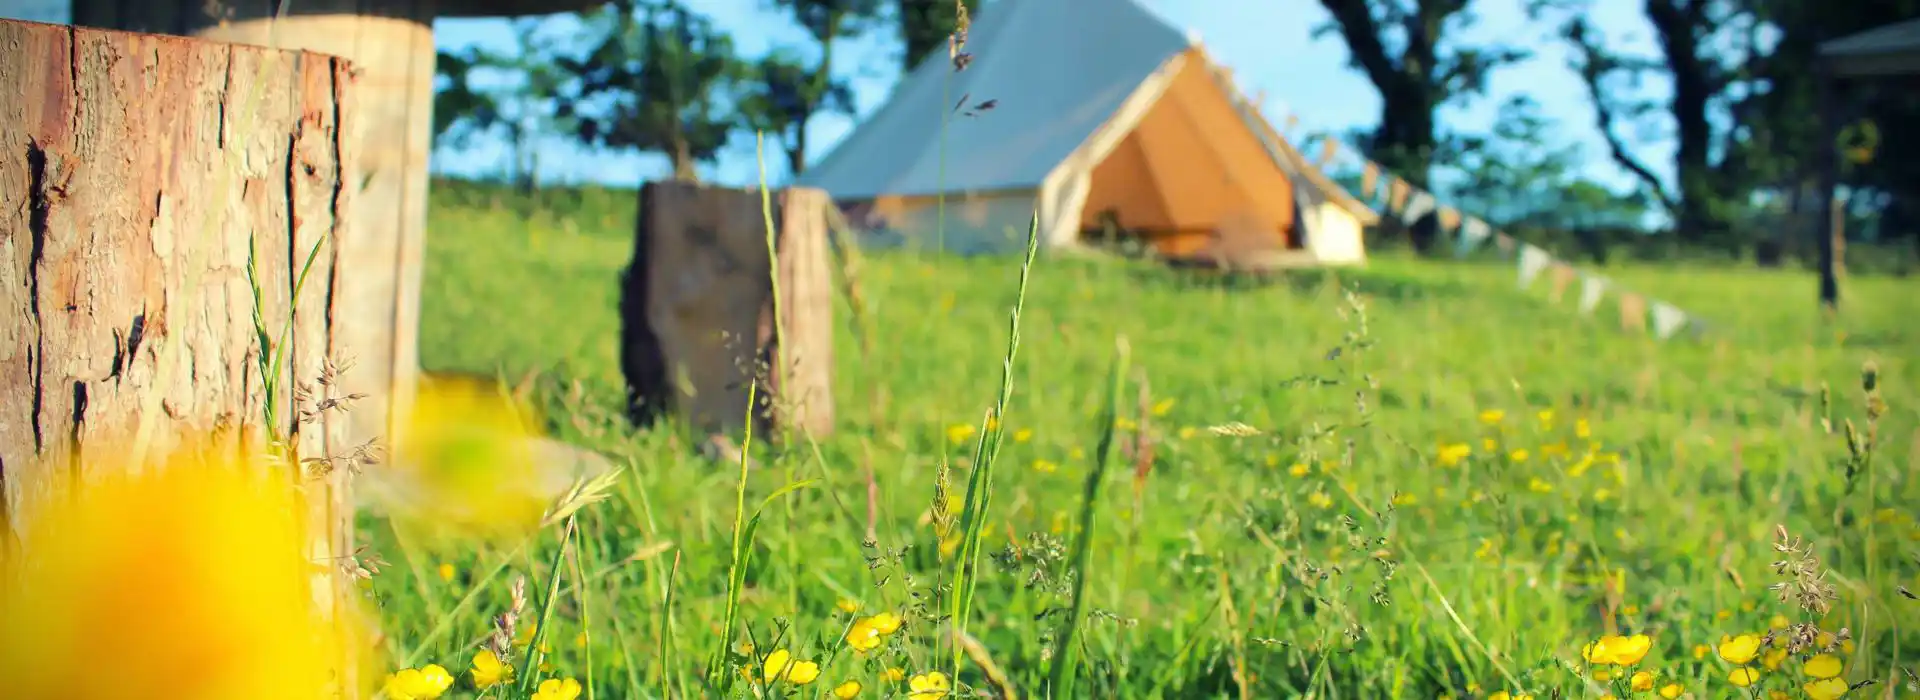 Eco campsites